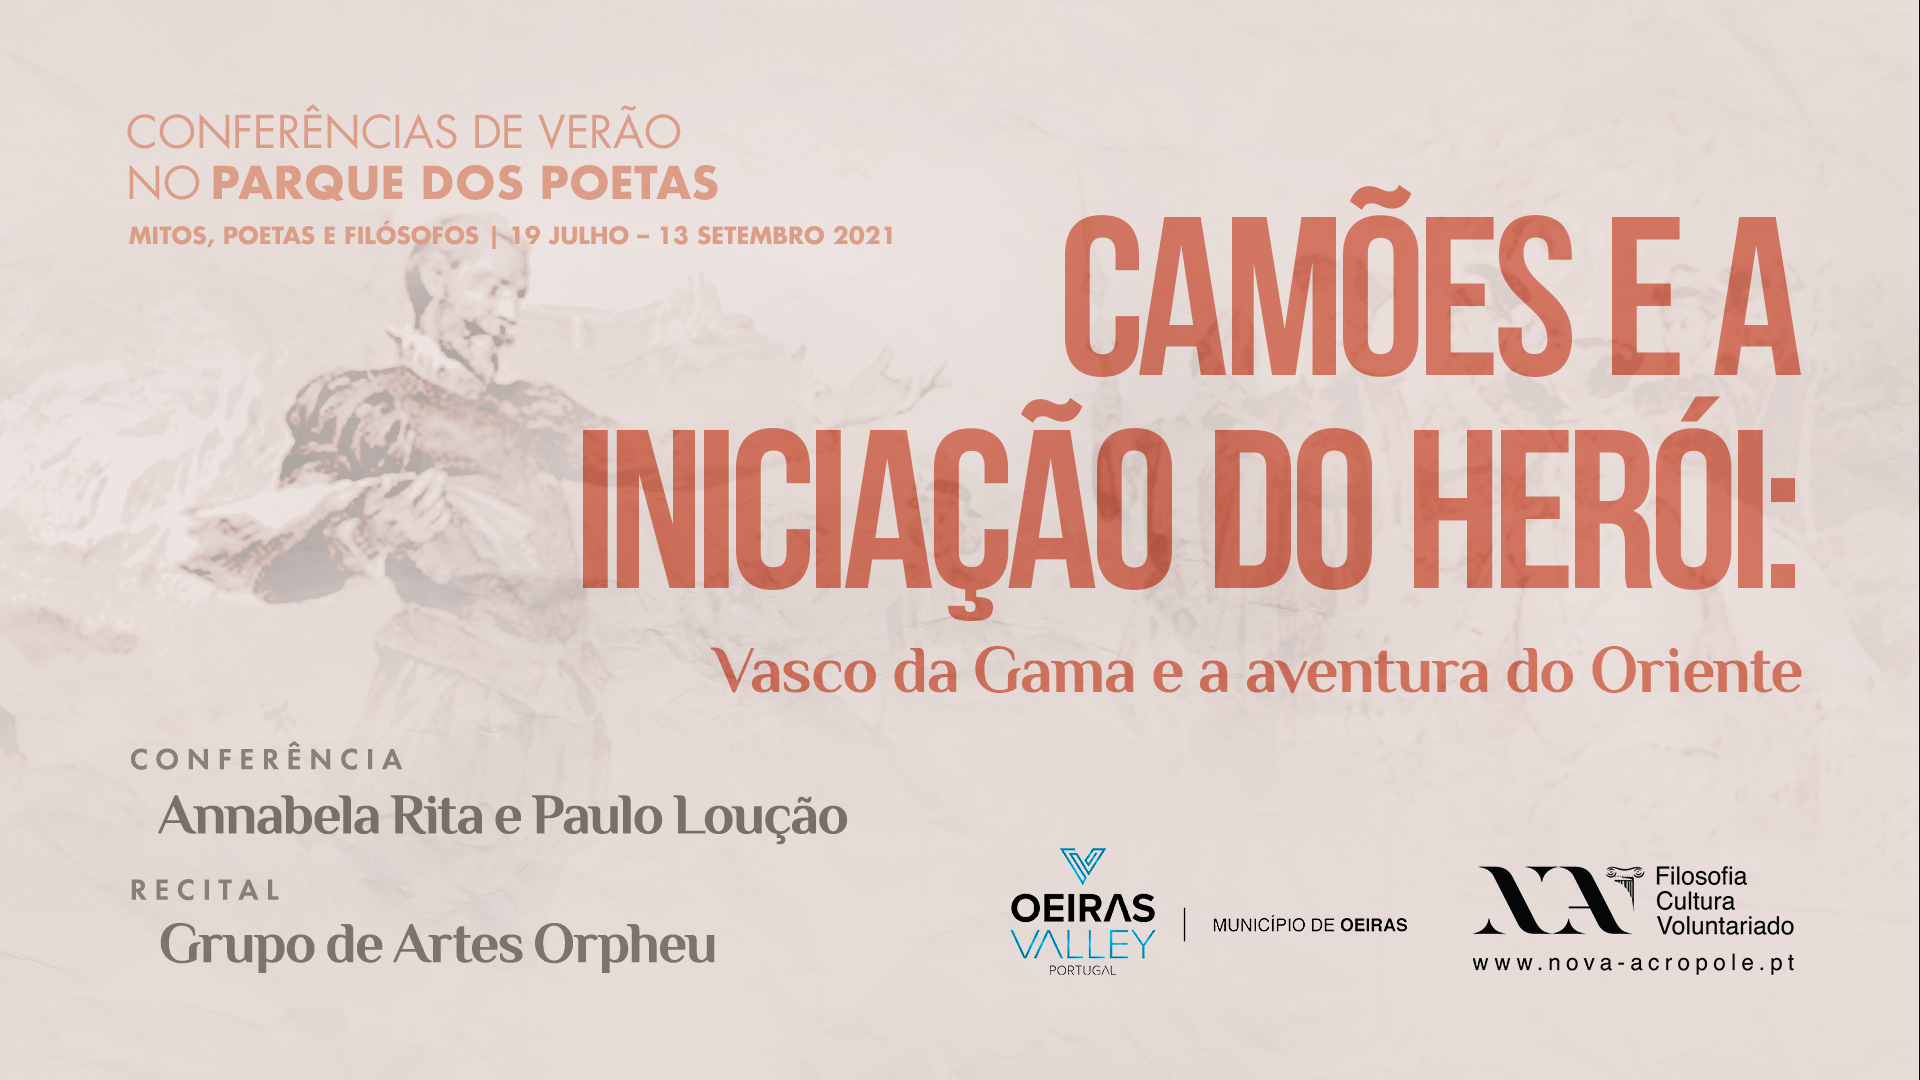 Lisboa - Nova Acrópole Portugal - Filosofia, Cultura, Voluntariado